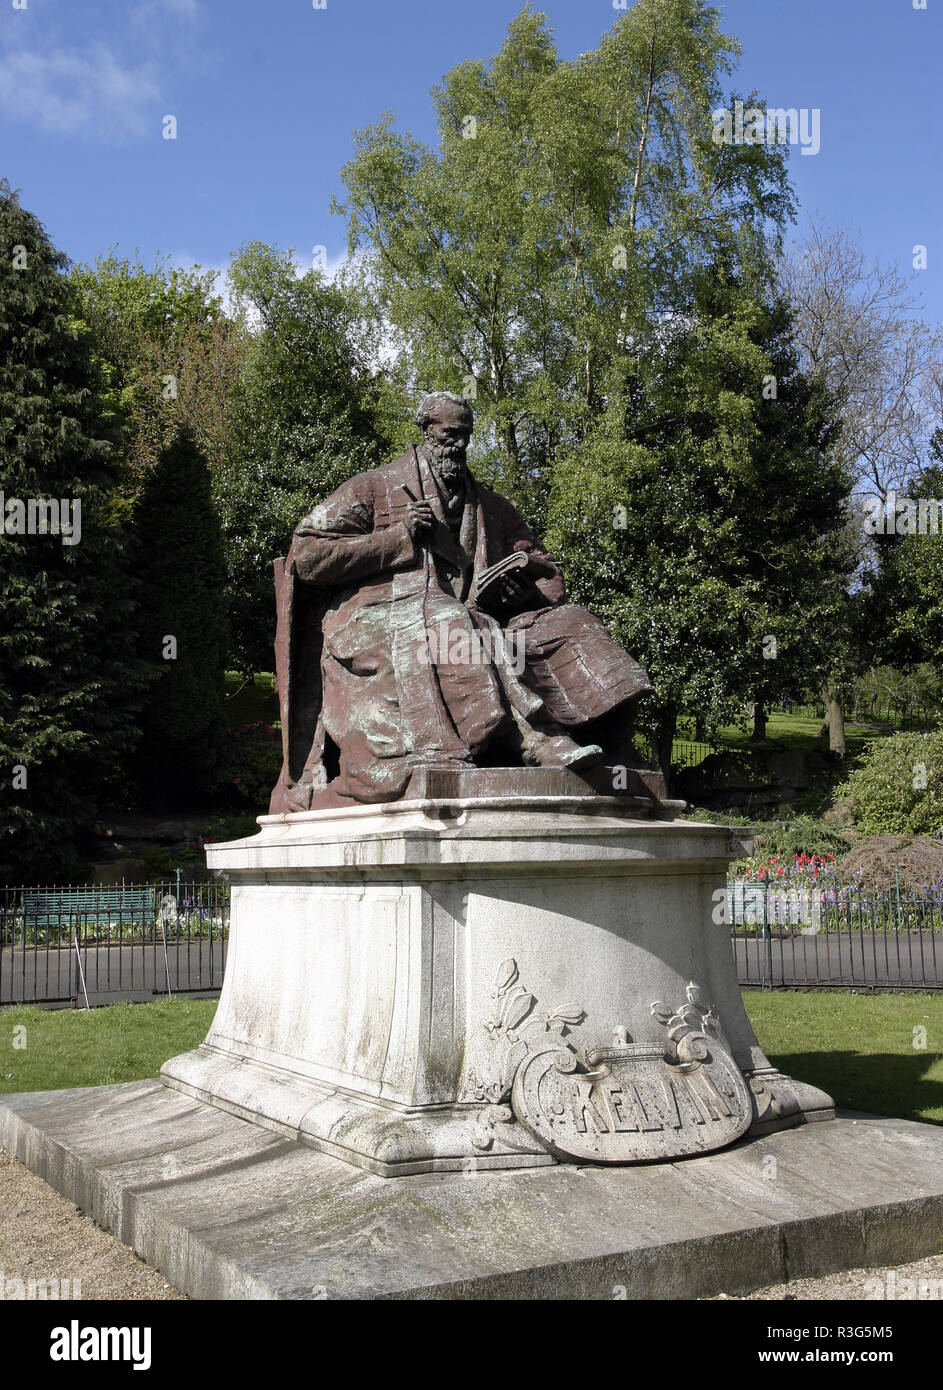 Esta estatua de Lord Kelvin, (William Thomson), quien fue un ingeniero y físico matemático es mejor conocido para la elaboración de la escala de temperatura absoluta. La estatua se encuentra en el parque Kelvingrove junto al río Kelvin en Glasgow. Foto de stock